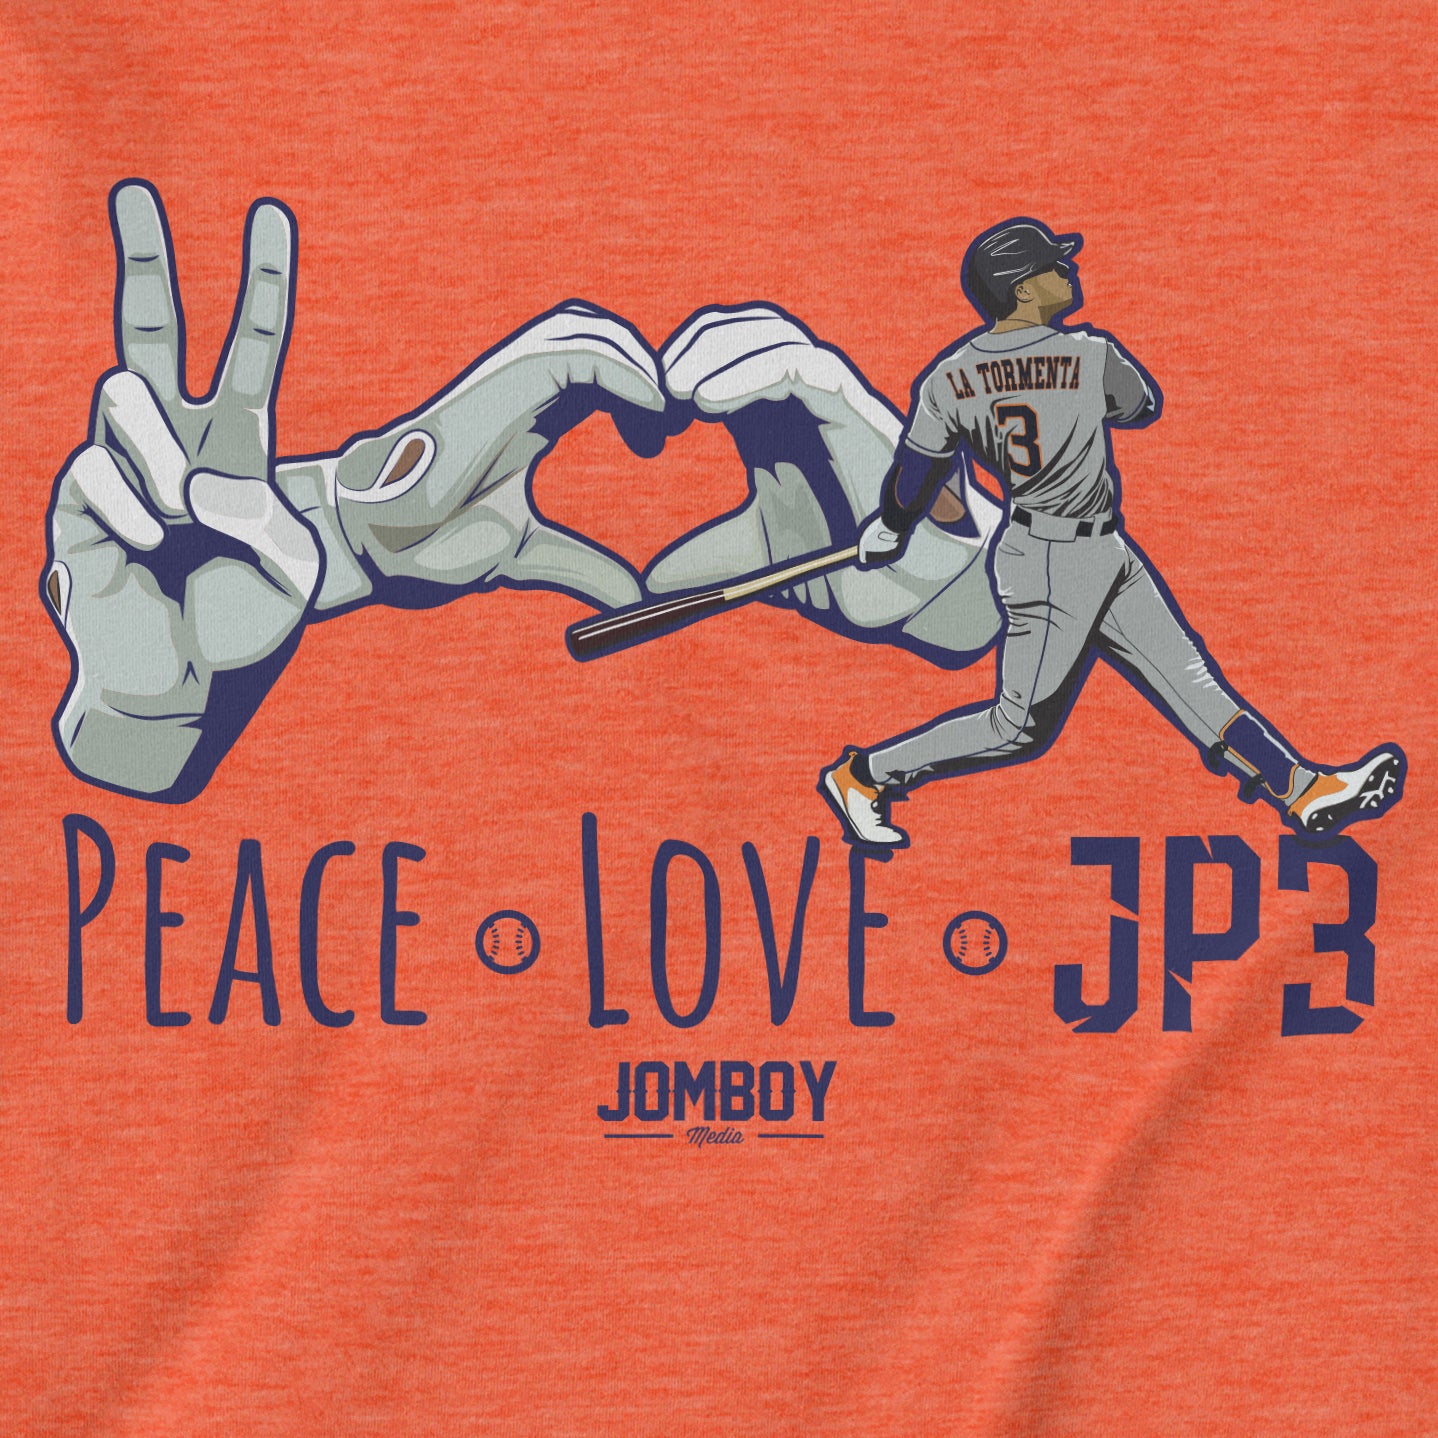 Peace, Love, JP3 | T-Shirt